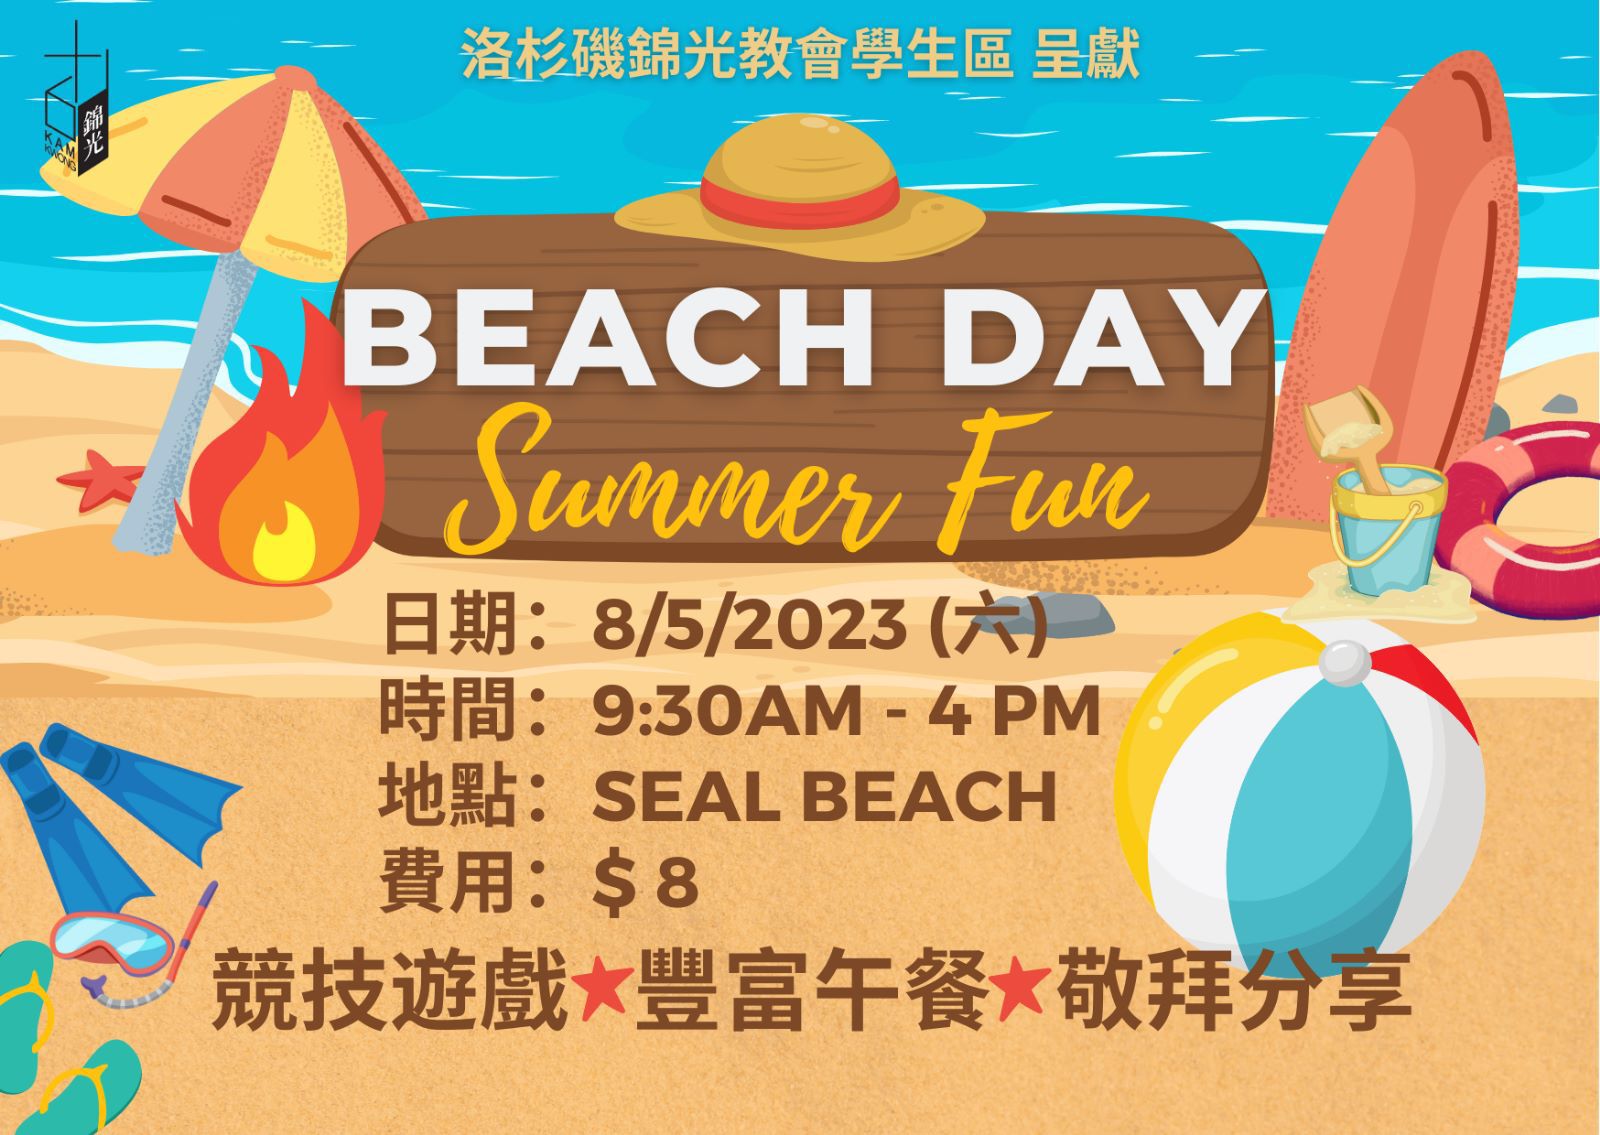 Beach Day - Summer Fun